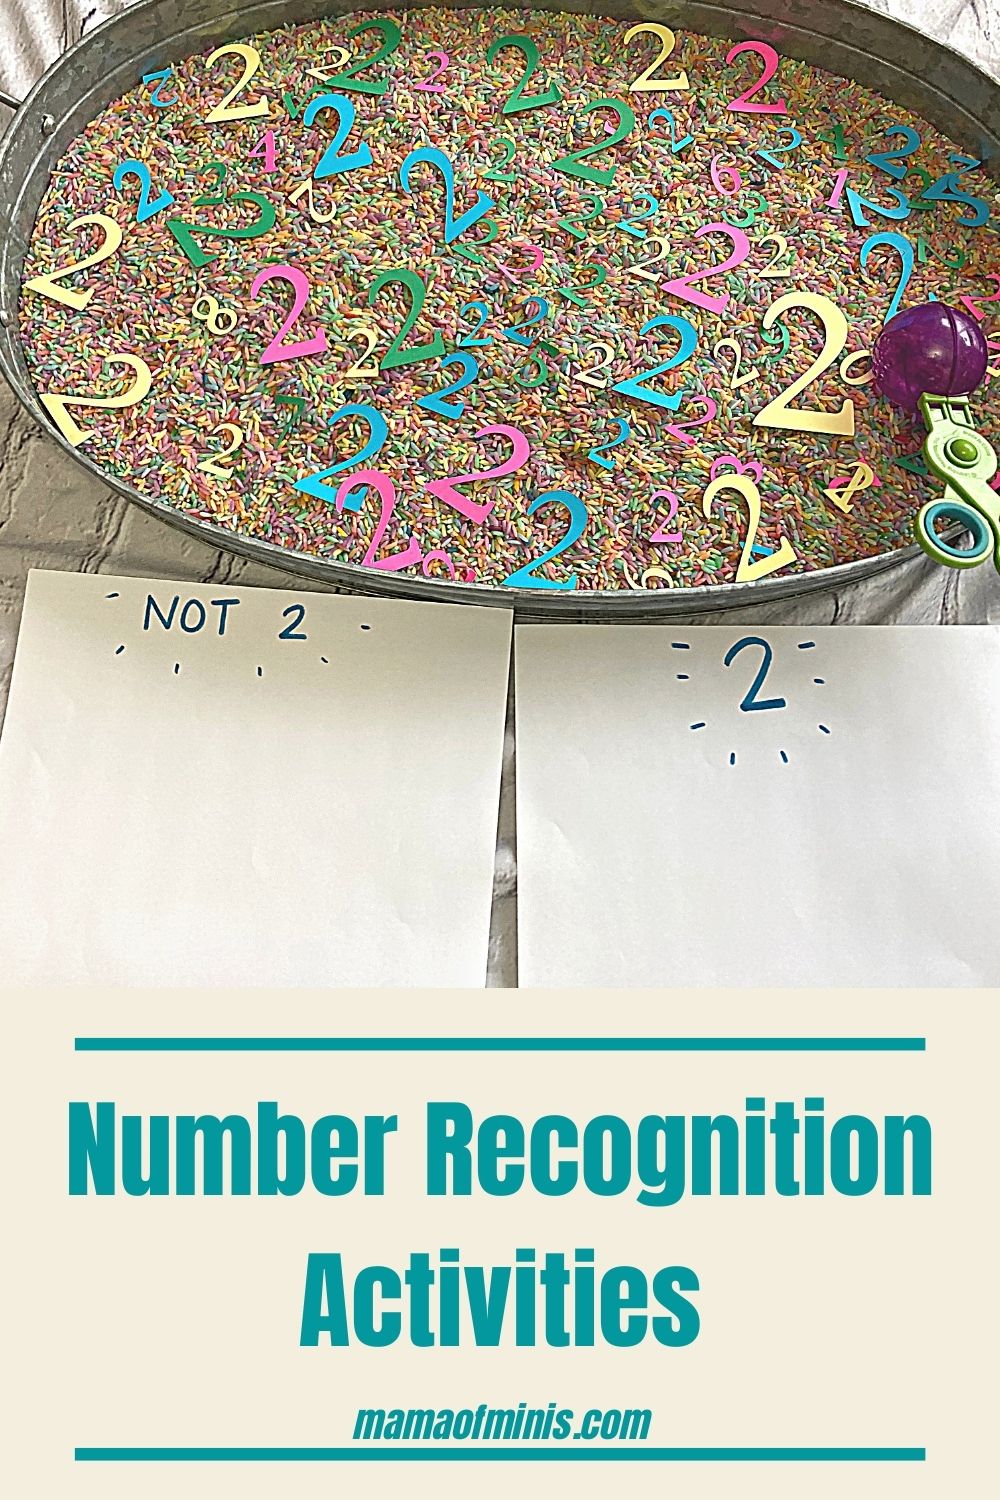 Number Recognition Activities for Preschool